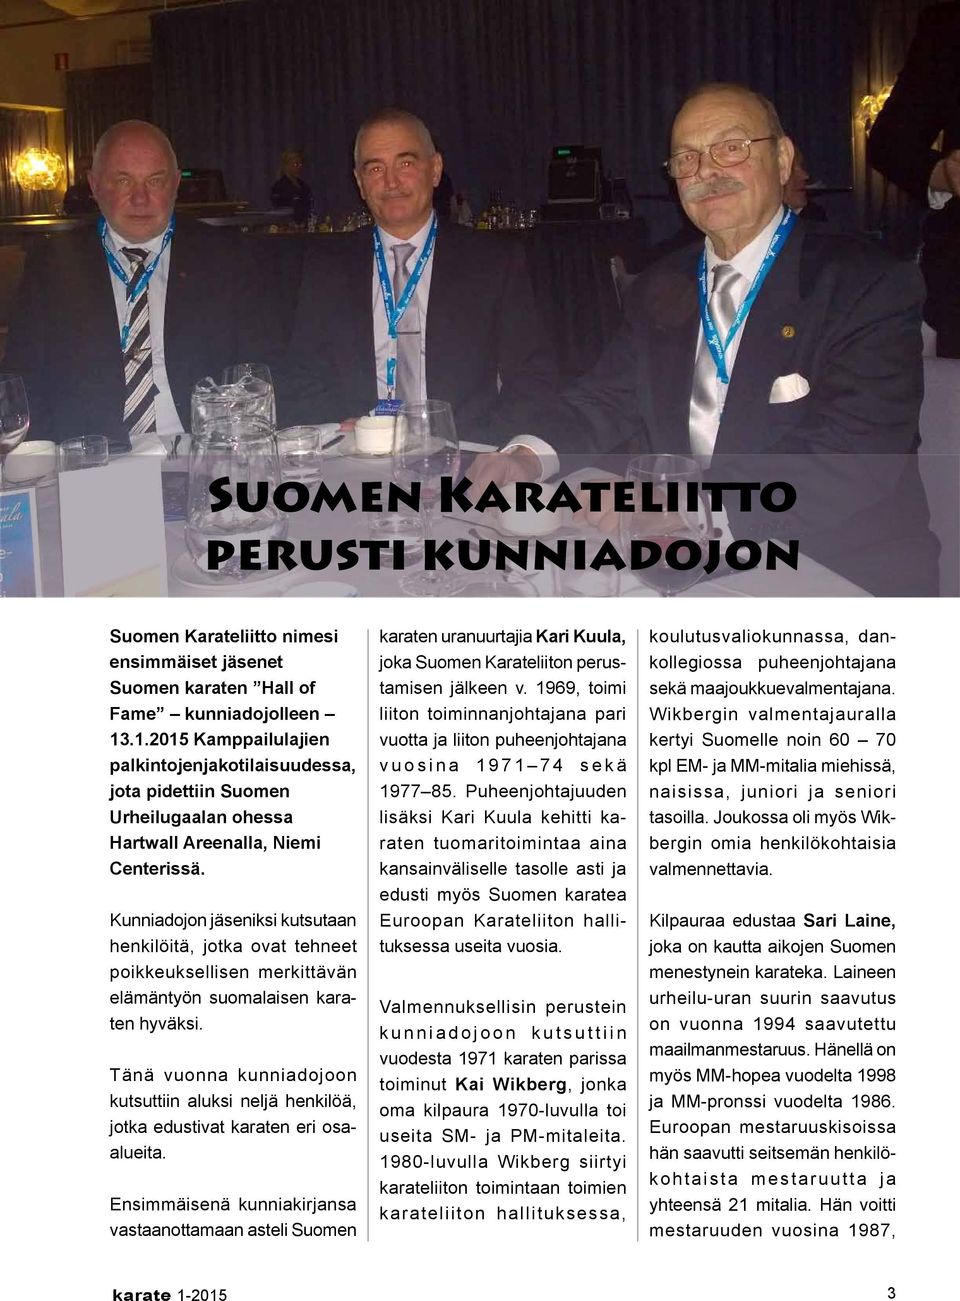 Kunniadojon jäseniksi kutsutaan henkilöitä, jotka ovat tehneet poikkeuksellisen merkittävän elämäntyön suomalaisen karaten hyväksi.